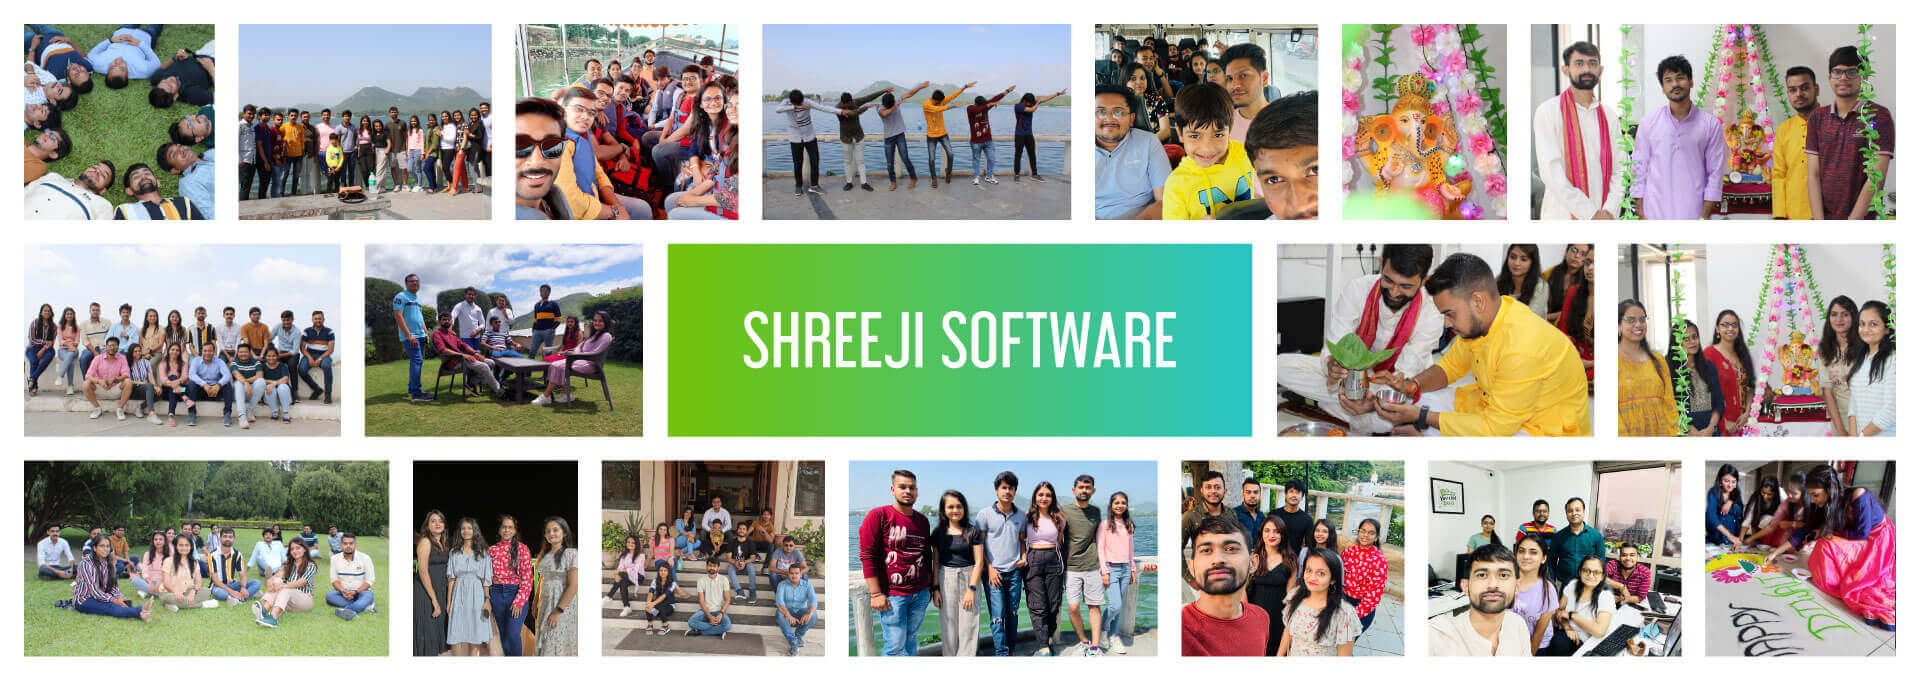 Shreeji Software family